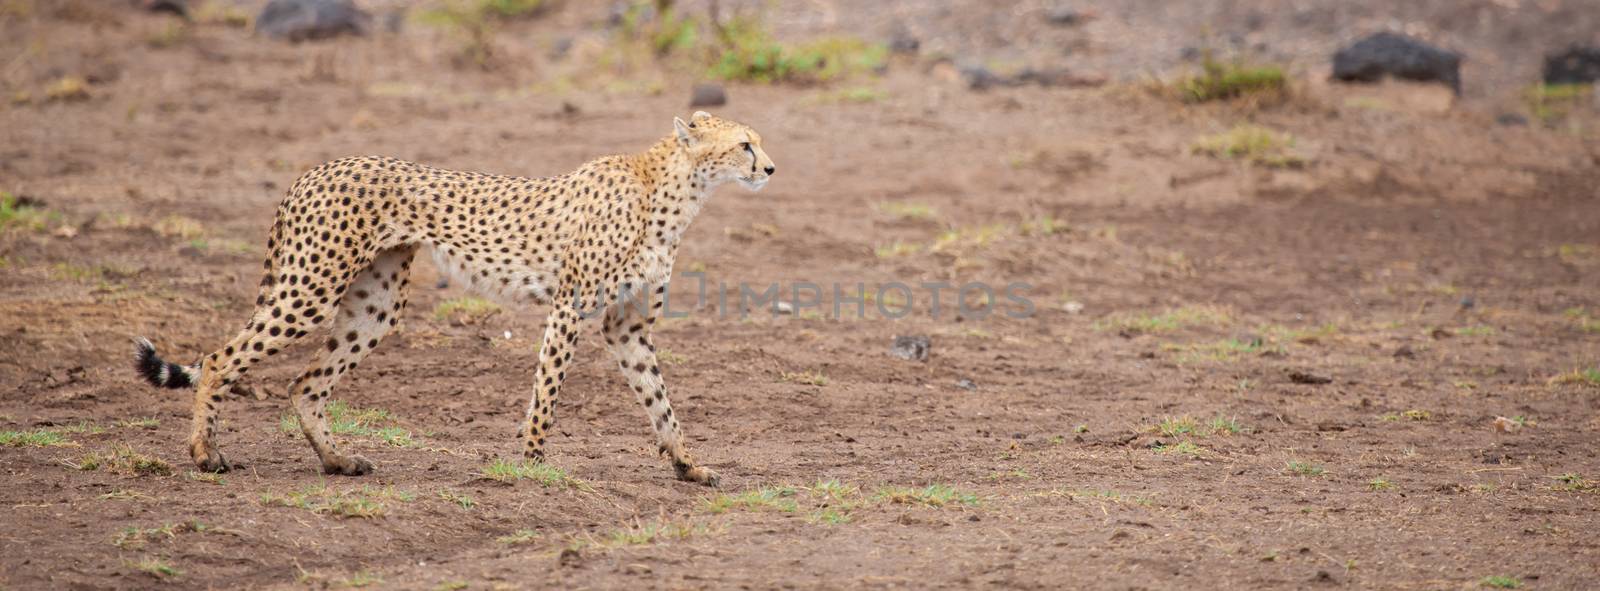 a gepard in the savannah of Kenya by 25ehaag6